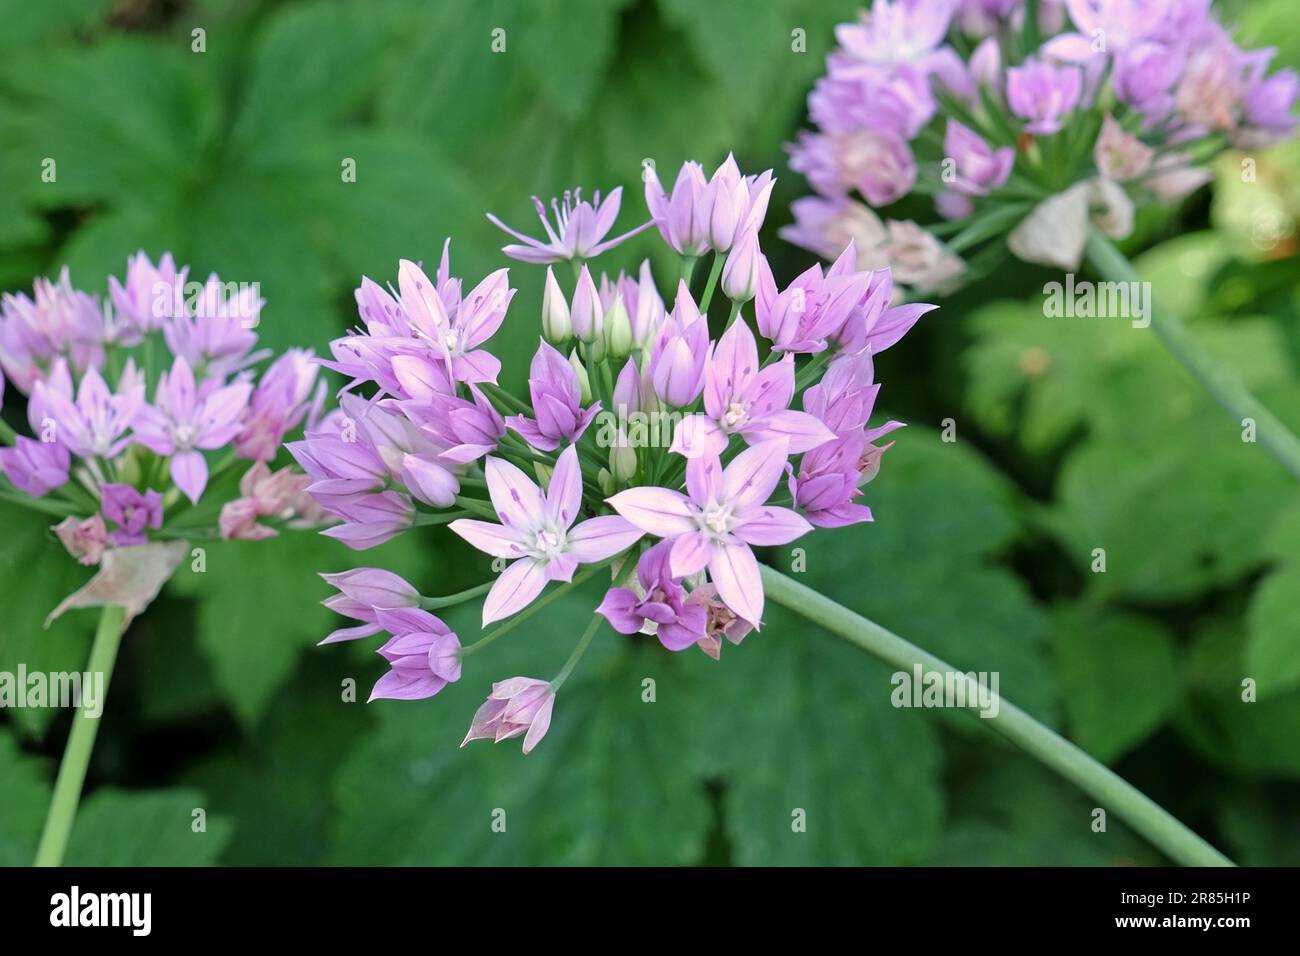 Allium unifolium 'Eros' in flower. Stock Photo